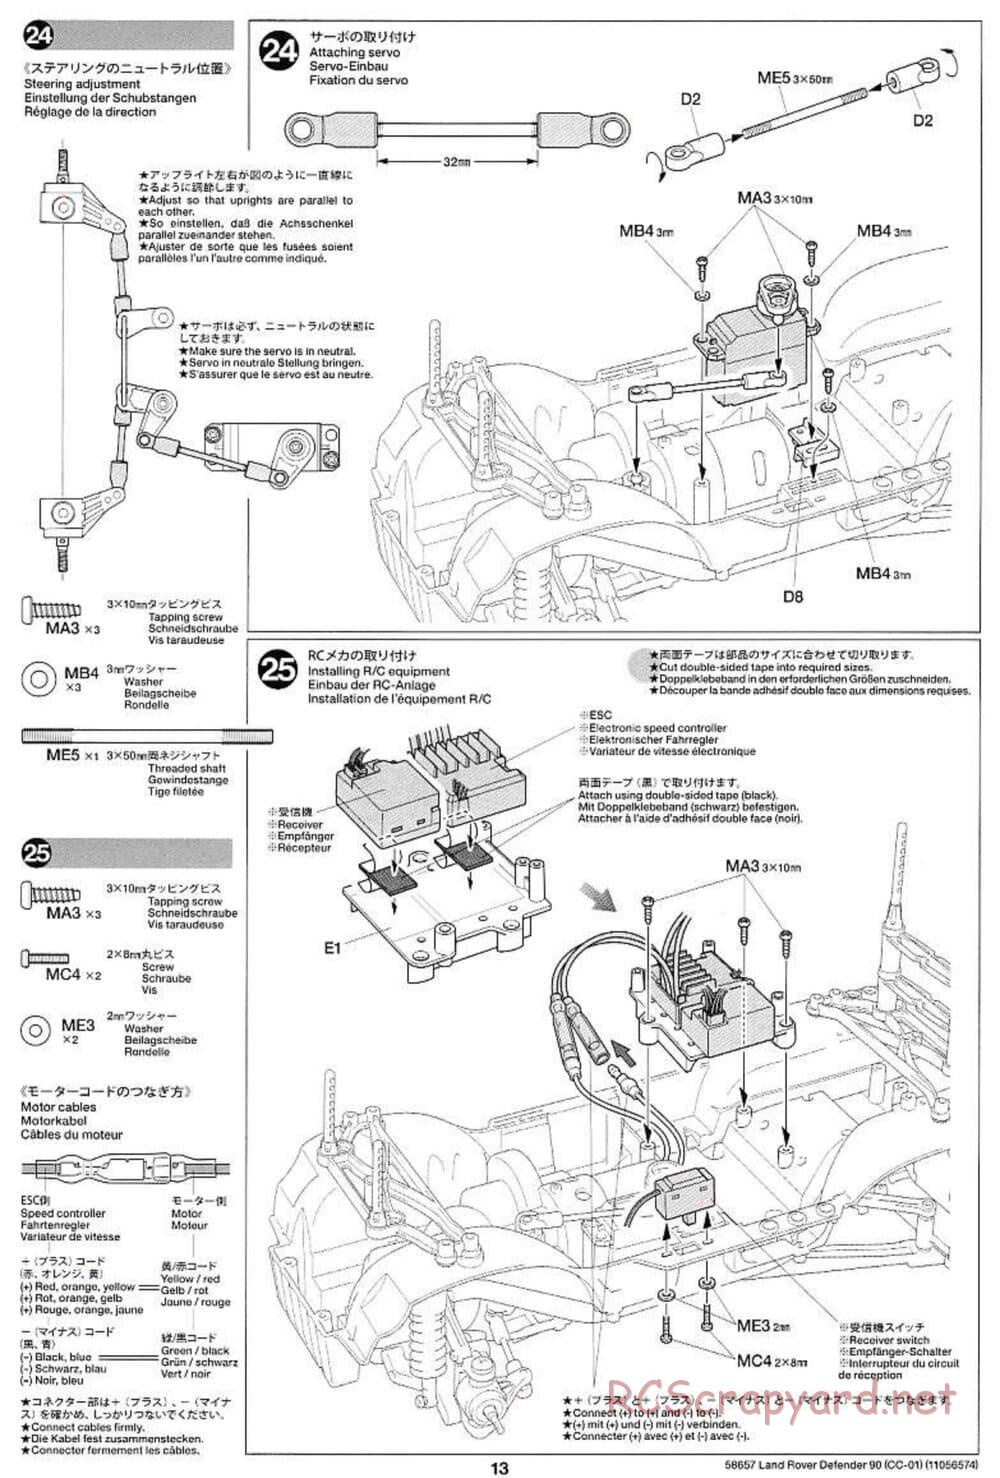 Tamiya - Land Rover Defender 90 - CC-01 Chassis - Manual - Page 13